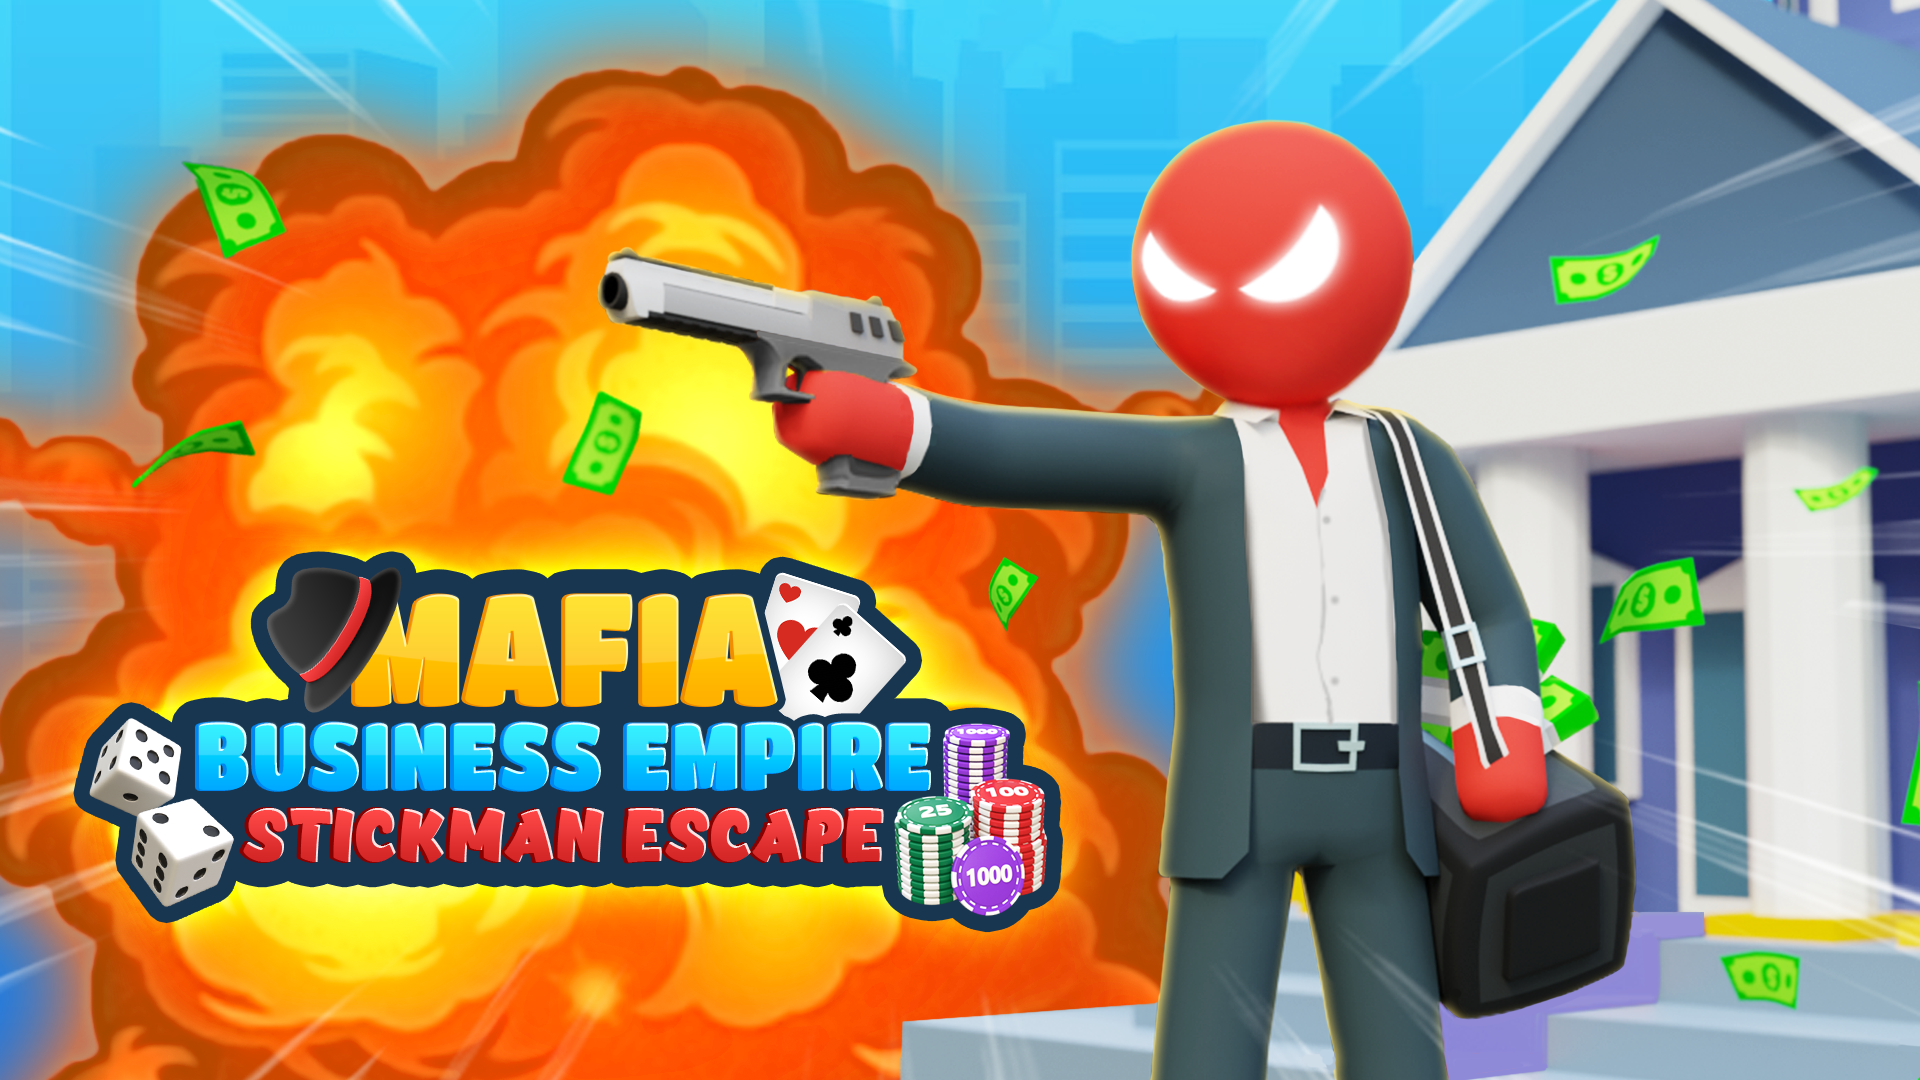 Mafia Business Empire: Stickman Escape 3D Game Image